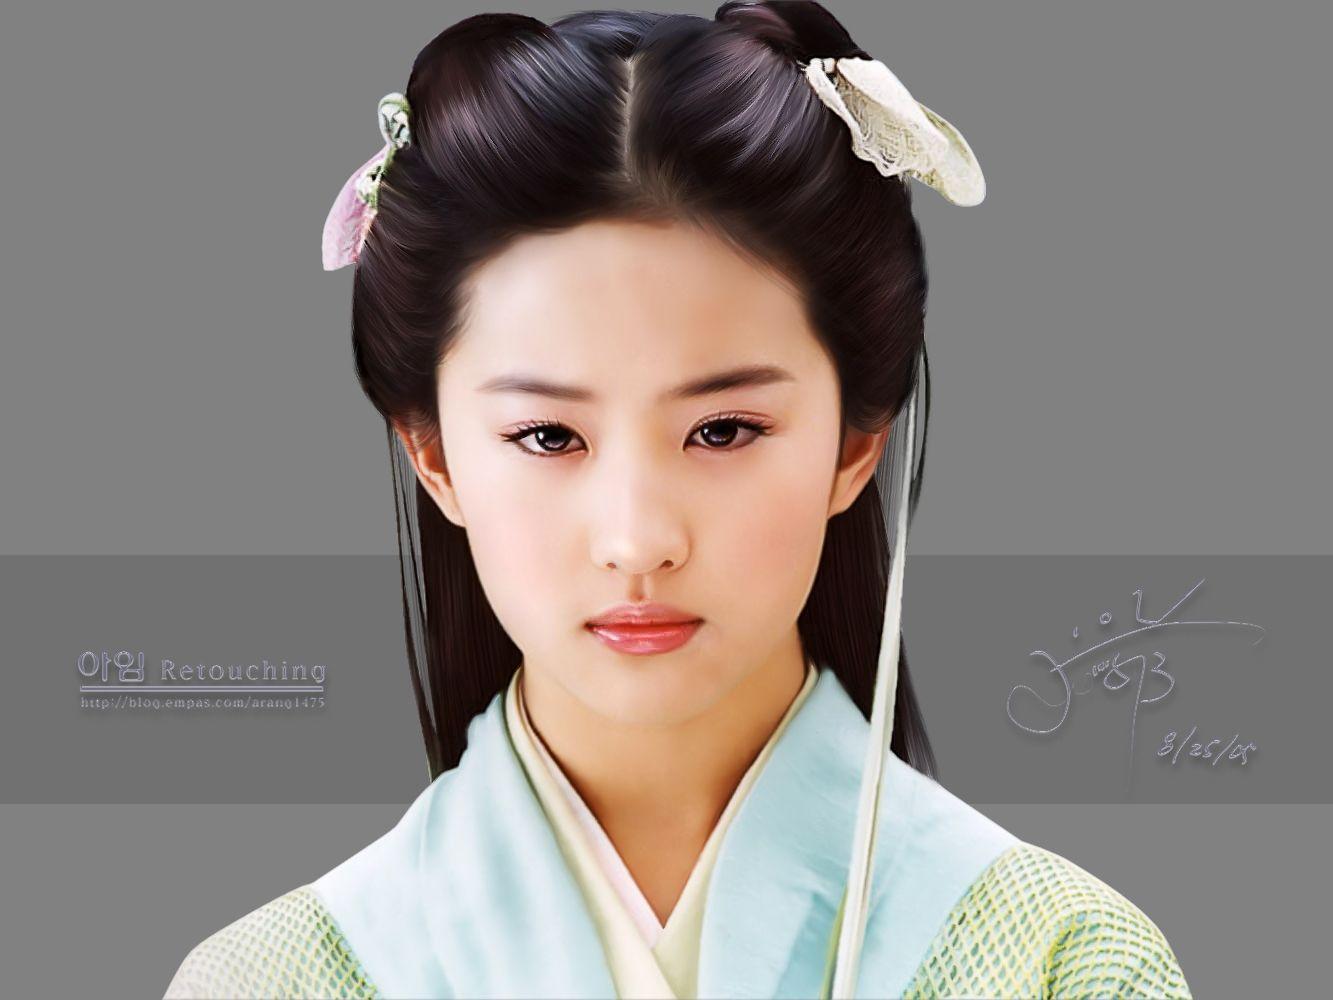 best Liu Yi Fei image. Asian beauty, Asian